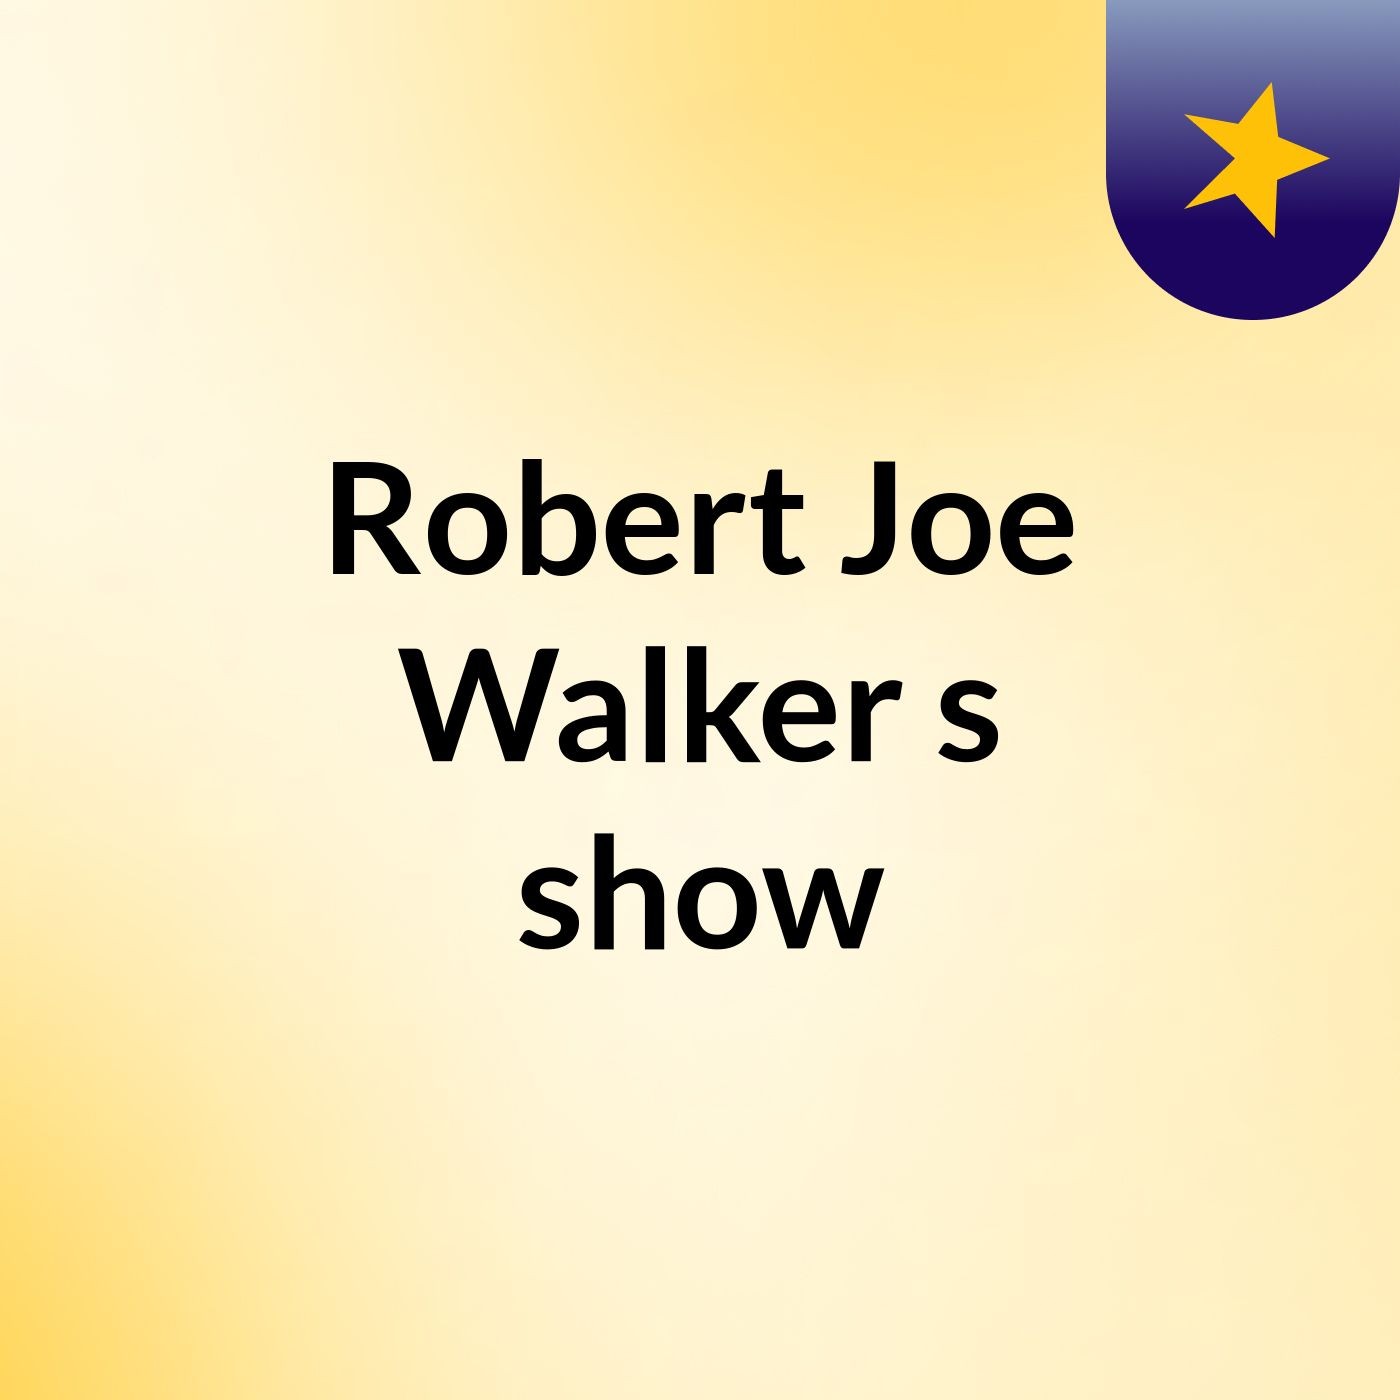 Robert Joe Walker's show